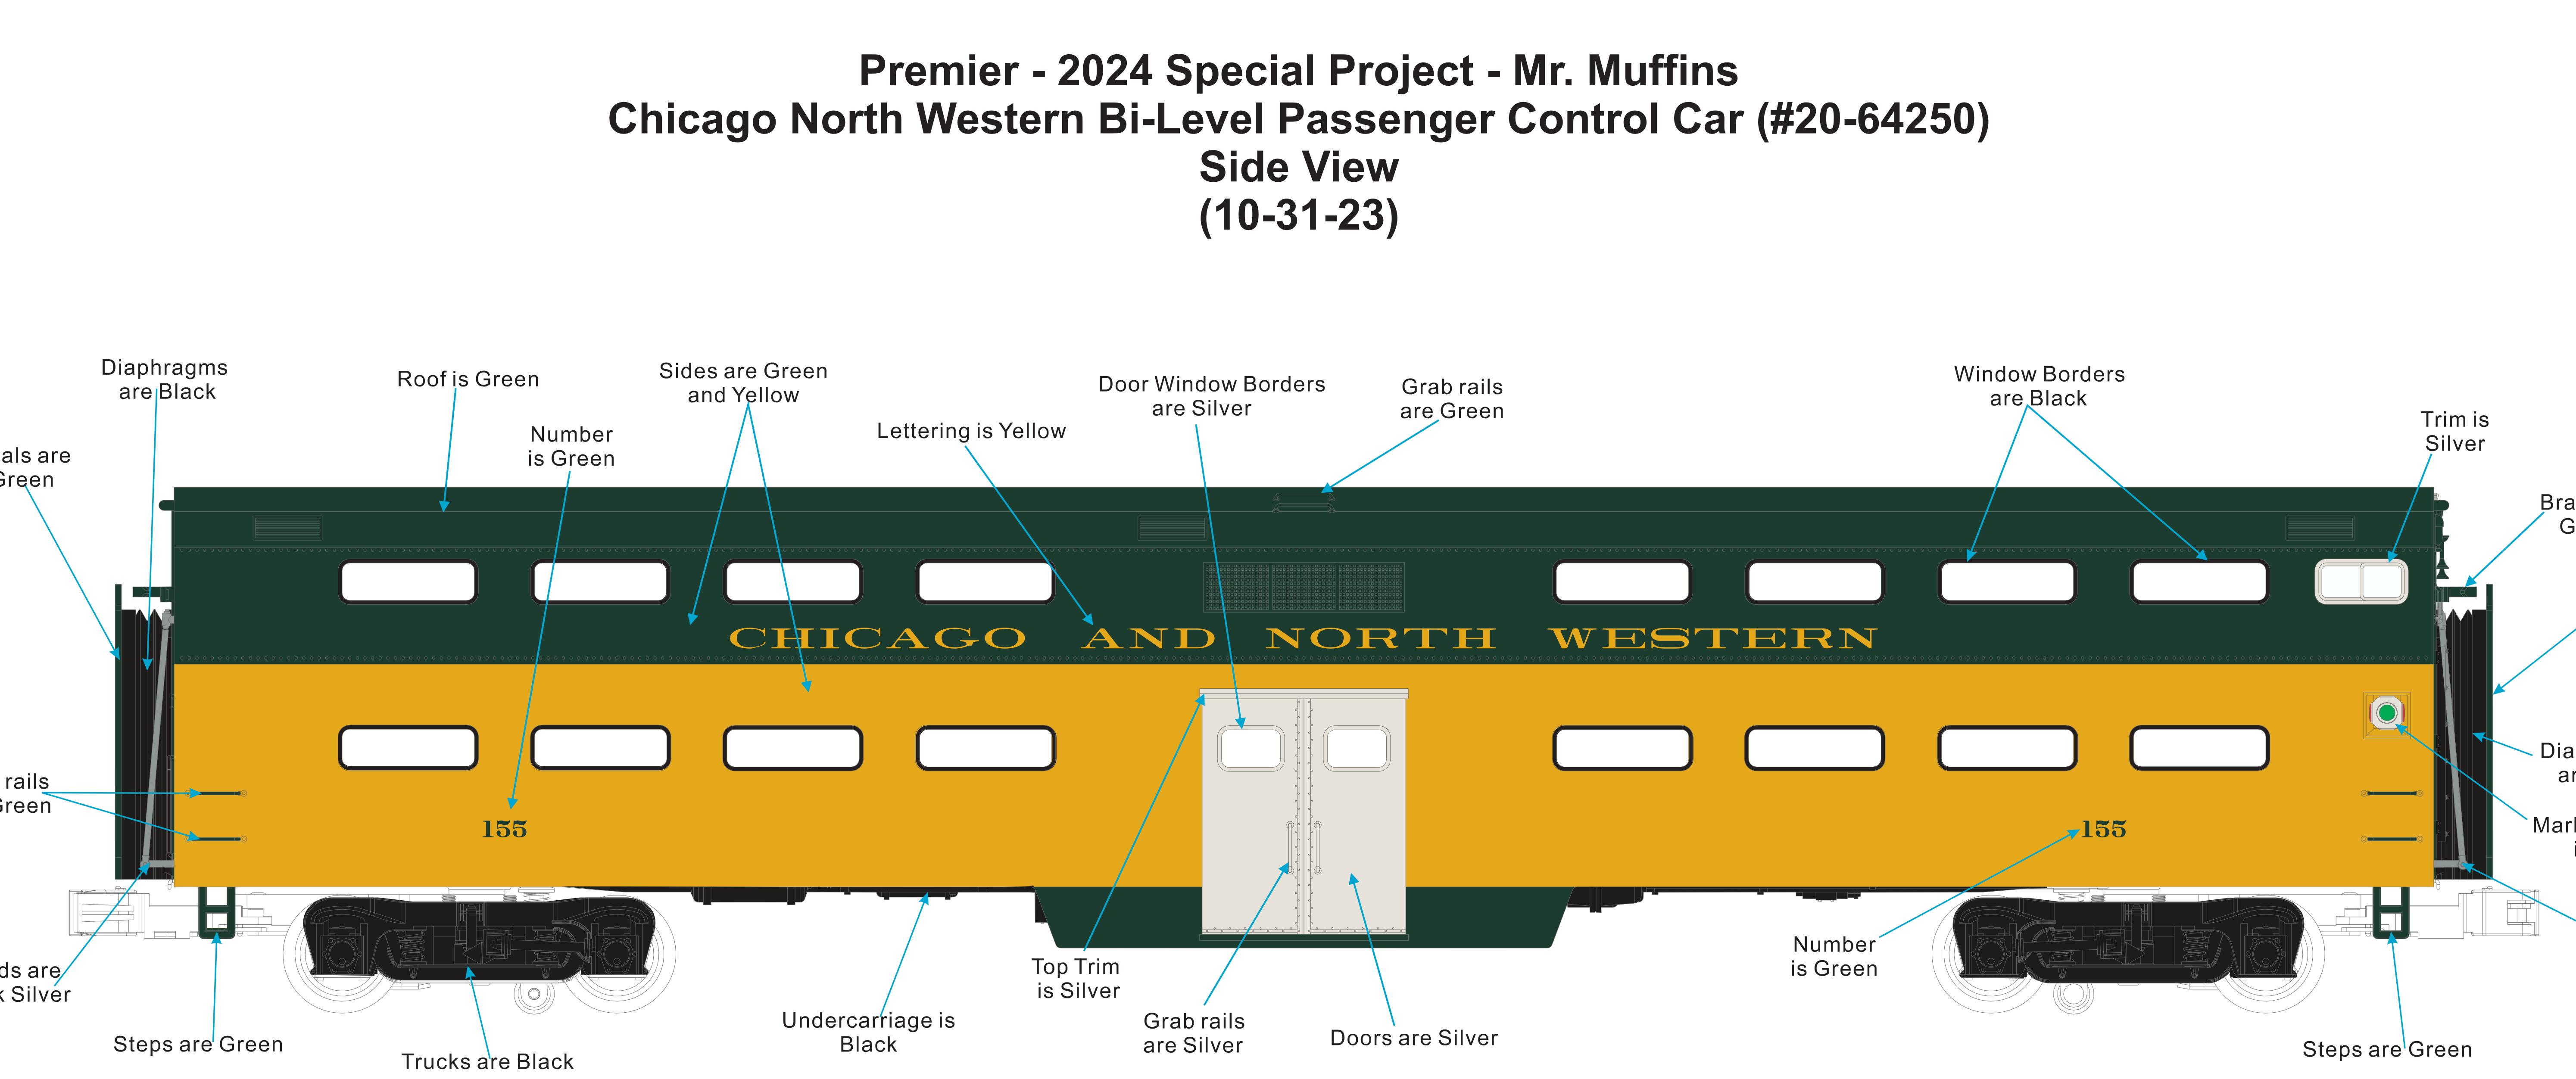 MTH 20-64249/50 - Premier - 70’ Bi-Level Gallery Car "Chicago North Western” (6-Car) - Custom Run for MrMuffin'sTrains